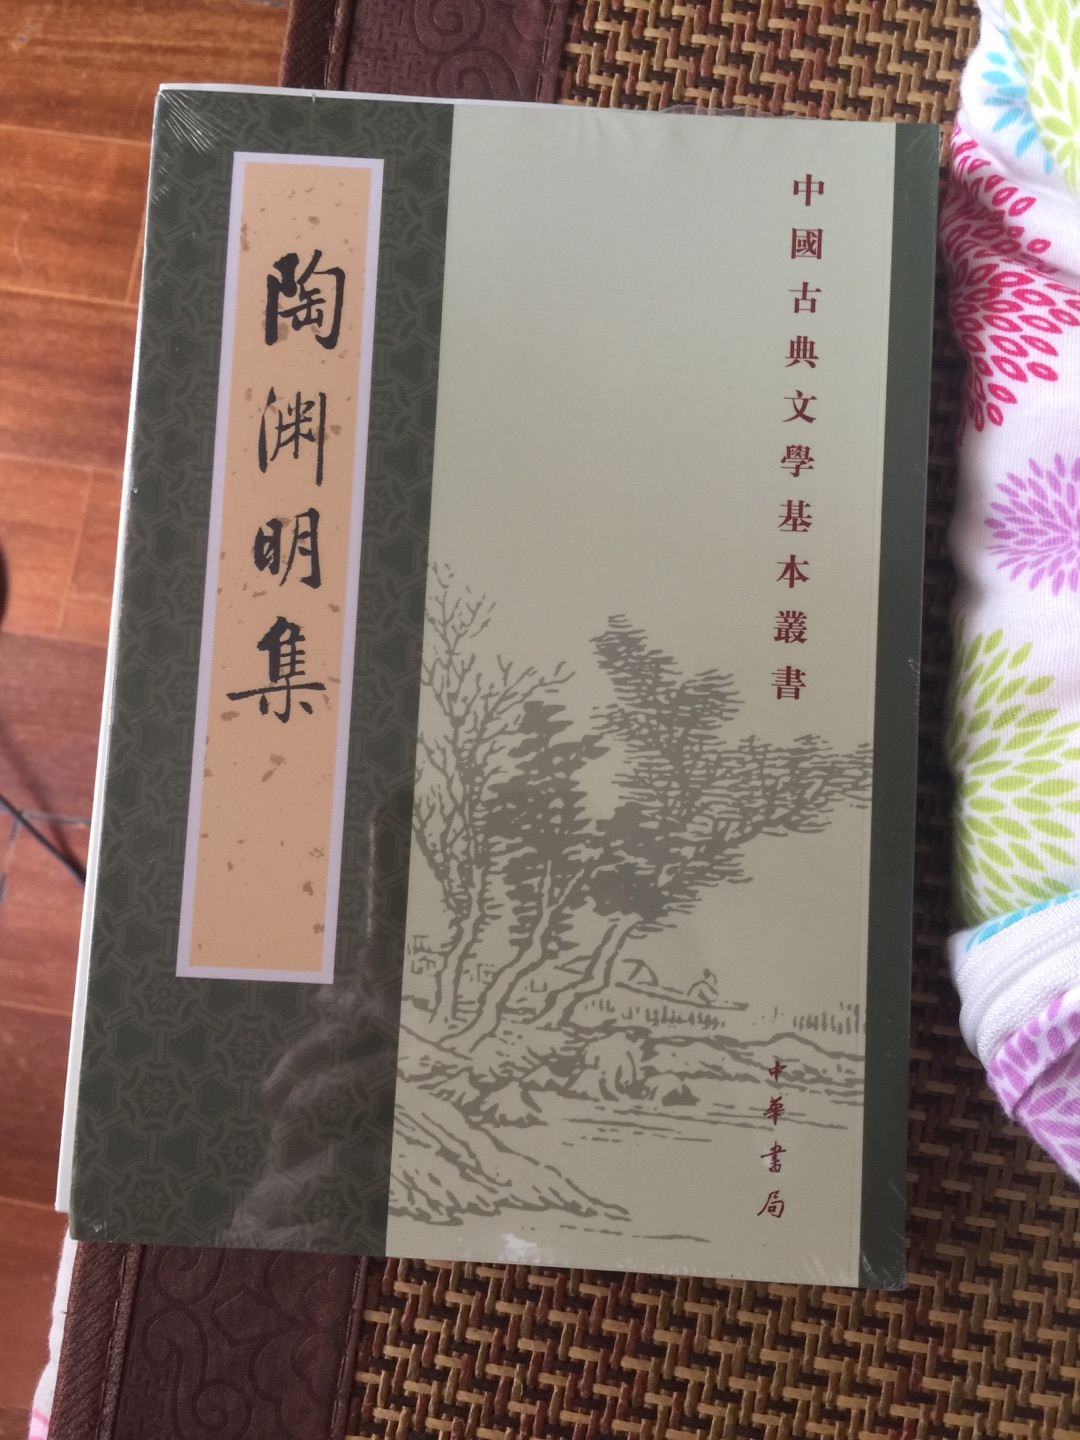 陶渊明的集子，中华书局出版，不错。